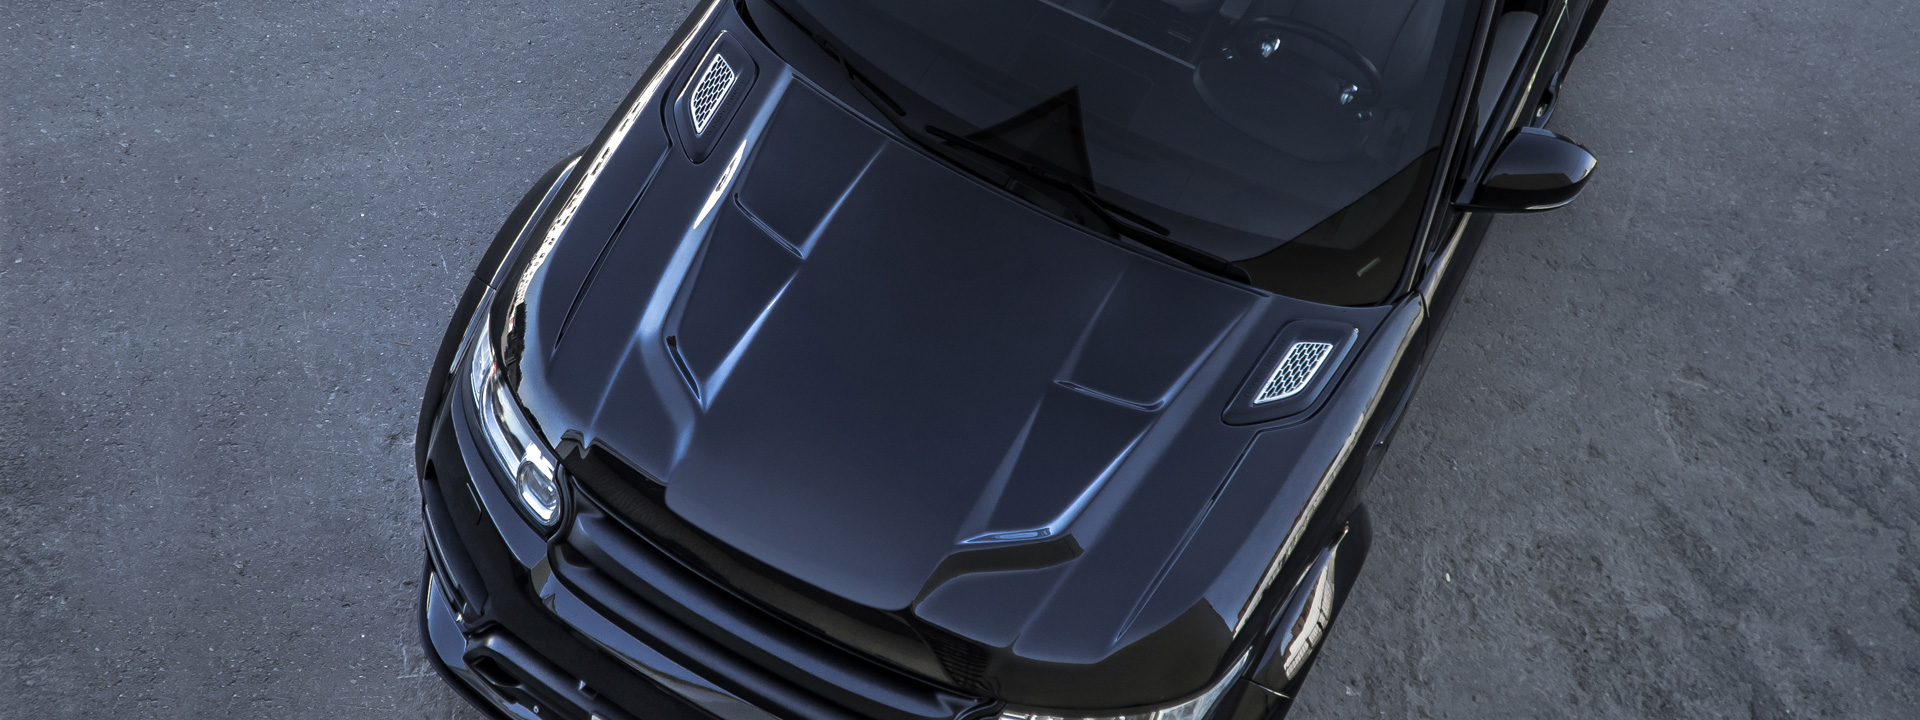 Капот для Range Rover Sport 2013/20